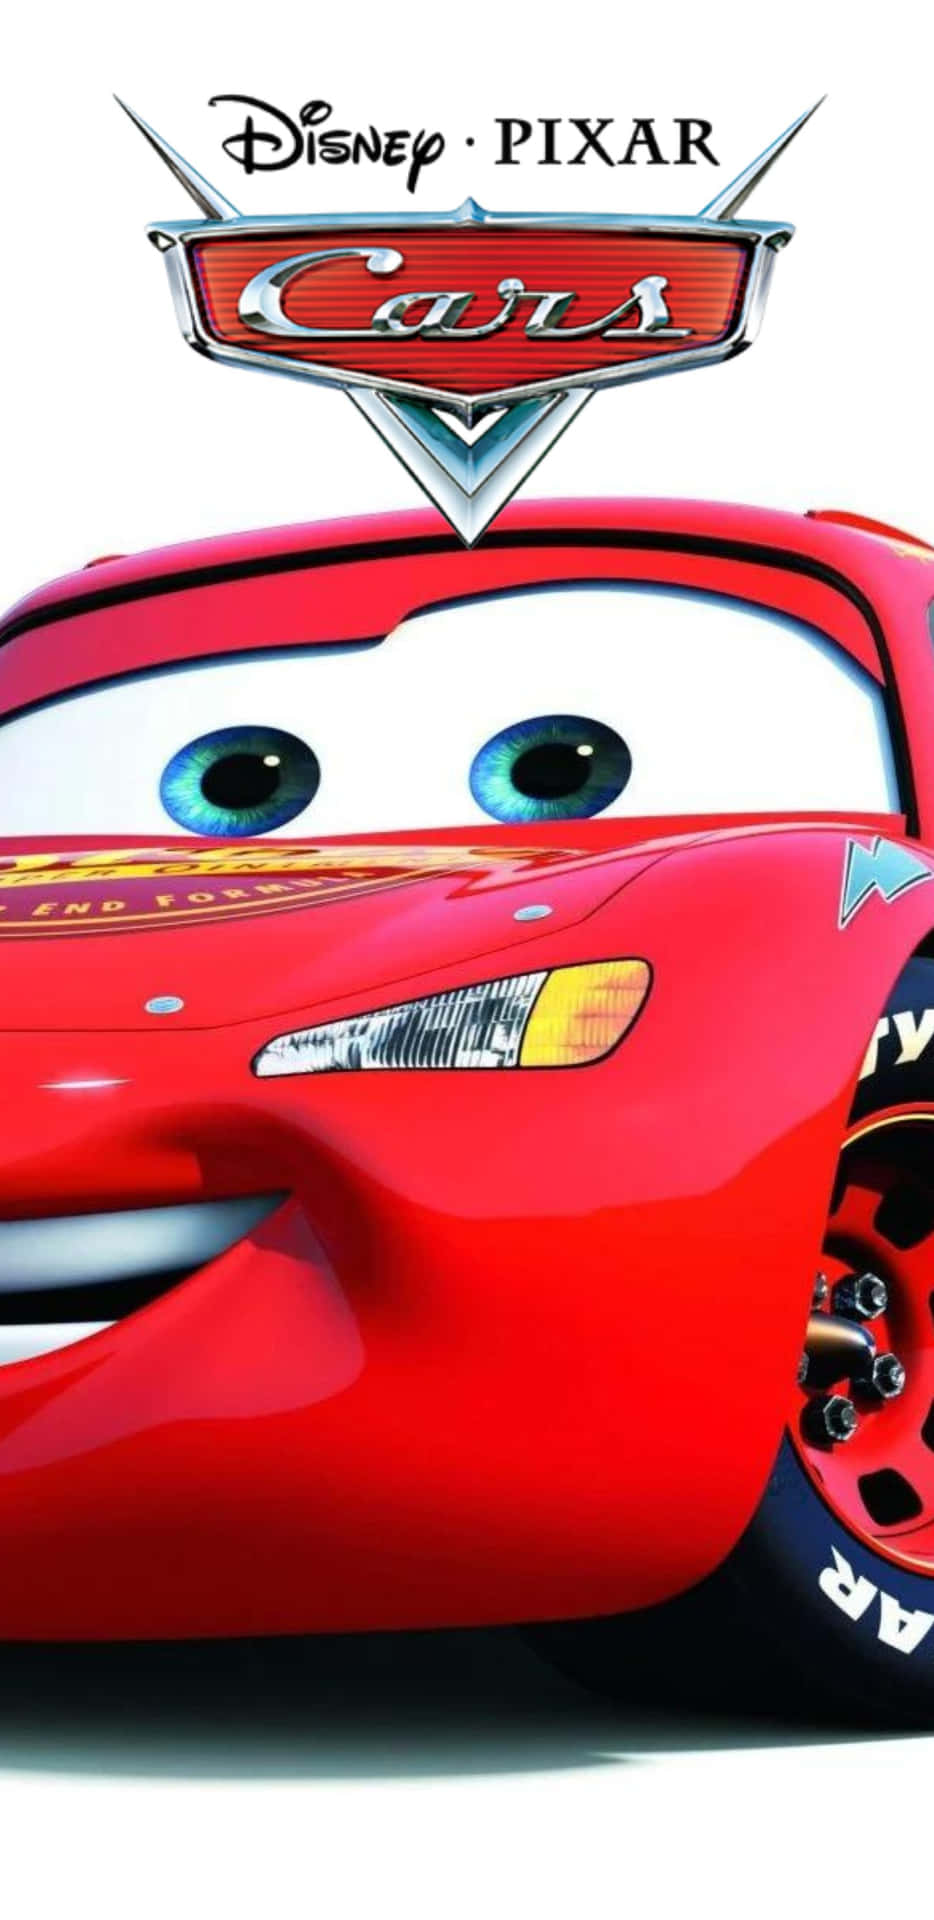 Disneypixar Cars 3 - Un Auto Rojo Con Ojos Grandes